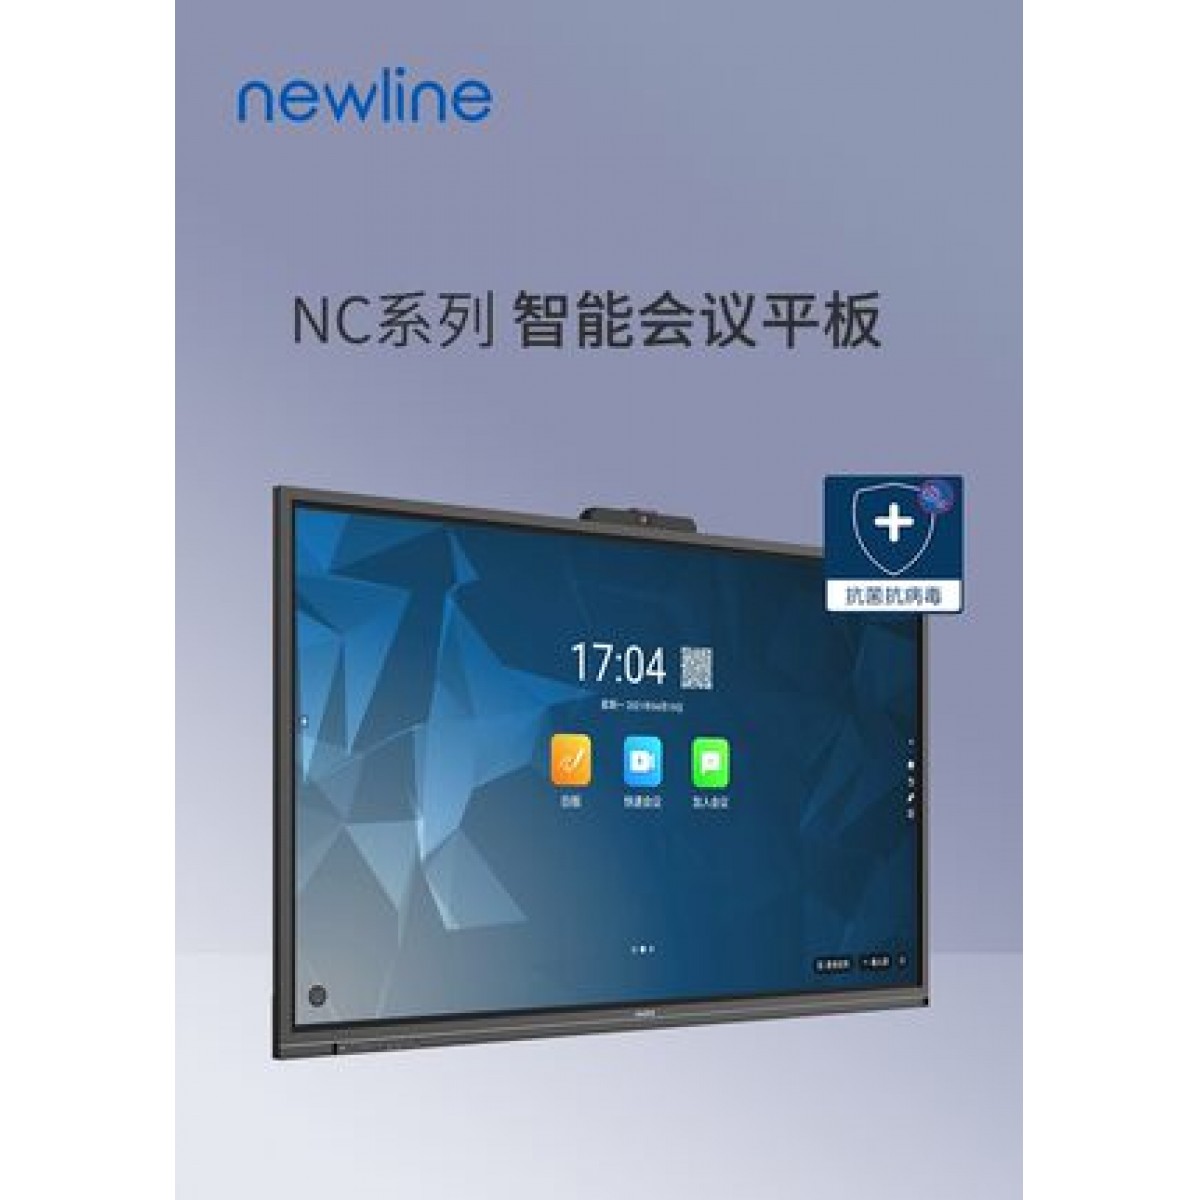 鸿合newline 75英寸会议平板TT-NC75a 交互式电子白板教学办公设备一体机 4K触摸投影显示智慧大屏